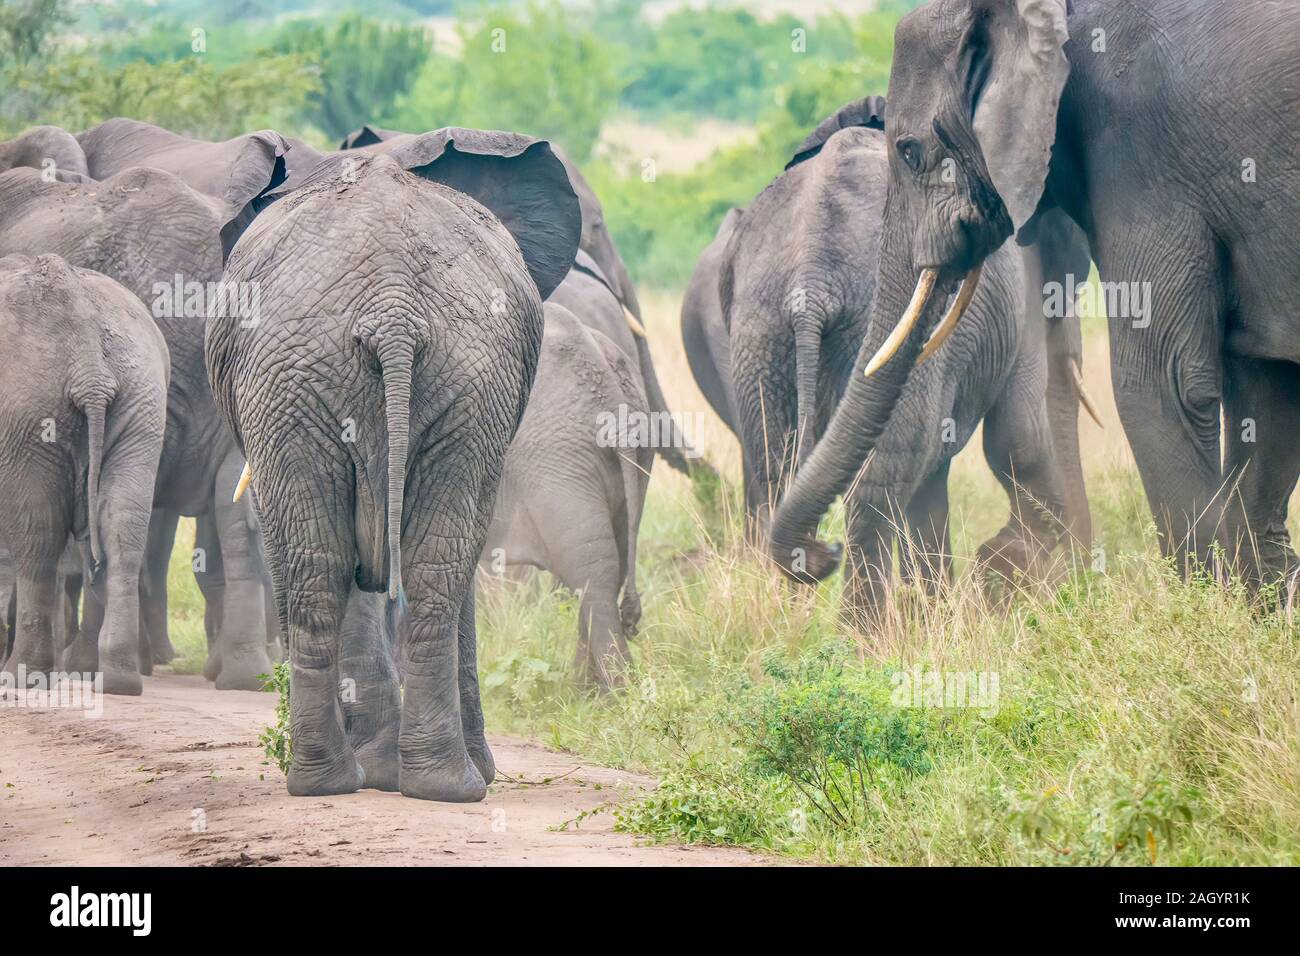 Konzentrieren Sie sich auf die hinteren Elefant in eine Herde von afrikanischen Elefanten entlang einer staubigen Feldweg in einem Nationalpark in Uganda. Motion Blur Auf der beweglichen Herde. Stockfoto